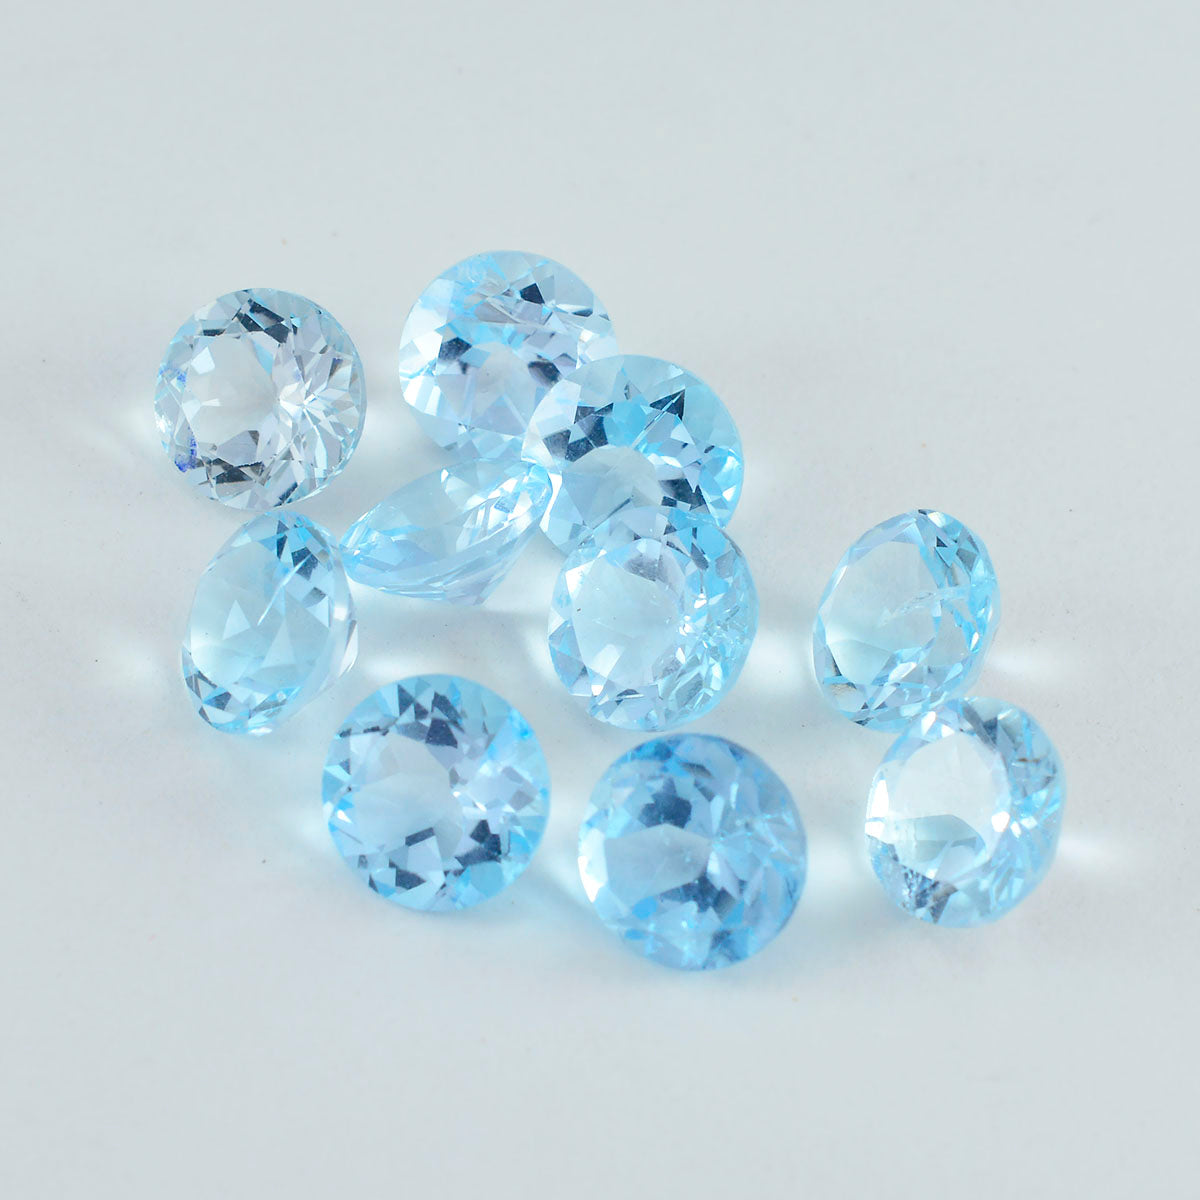 Riyogems 1 Stück natürlicher blauer Topas, facettiert, 4 x 4 mm, runde Form, süße Qualität, lose Edelsteine